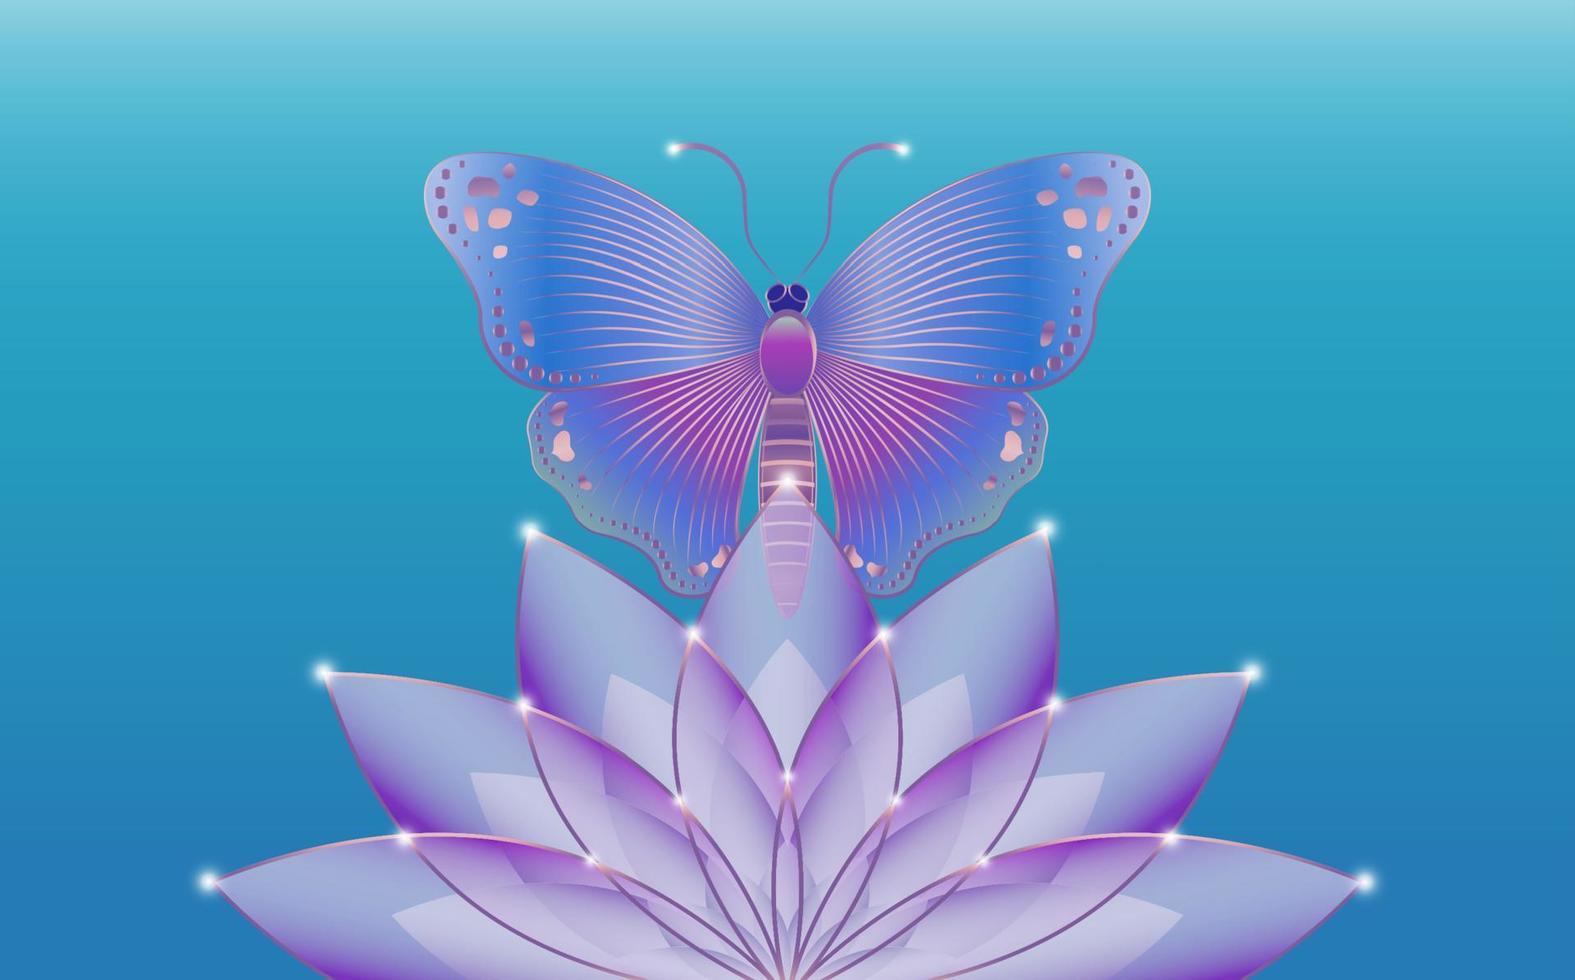 heilige lotusblume und mystischer schmetterlingslogoslogan mit bunter blumenschablone des schmetterlings. Vektordesign für Mode-, Poster- und Kartendrucke, einzeln auf blauem Hintergrund vektor